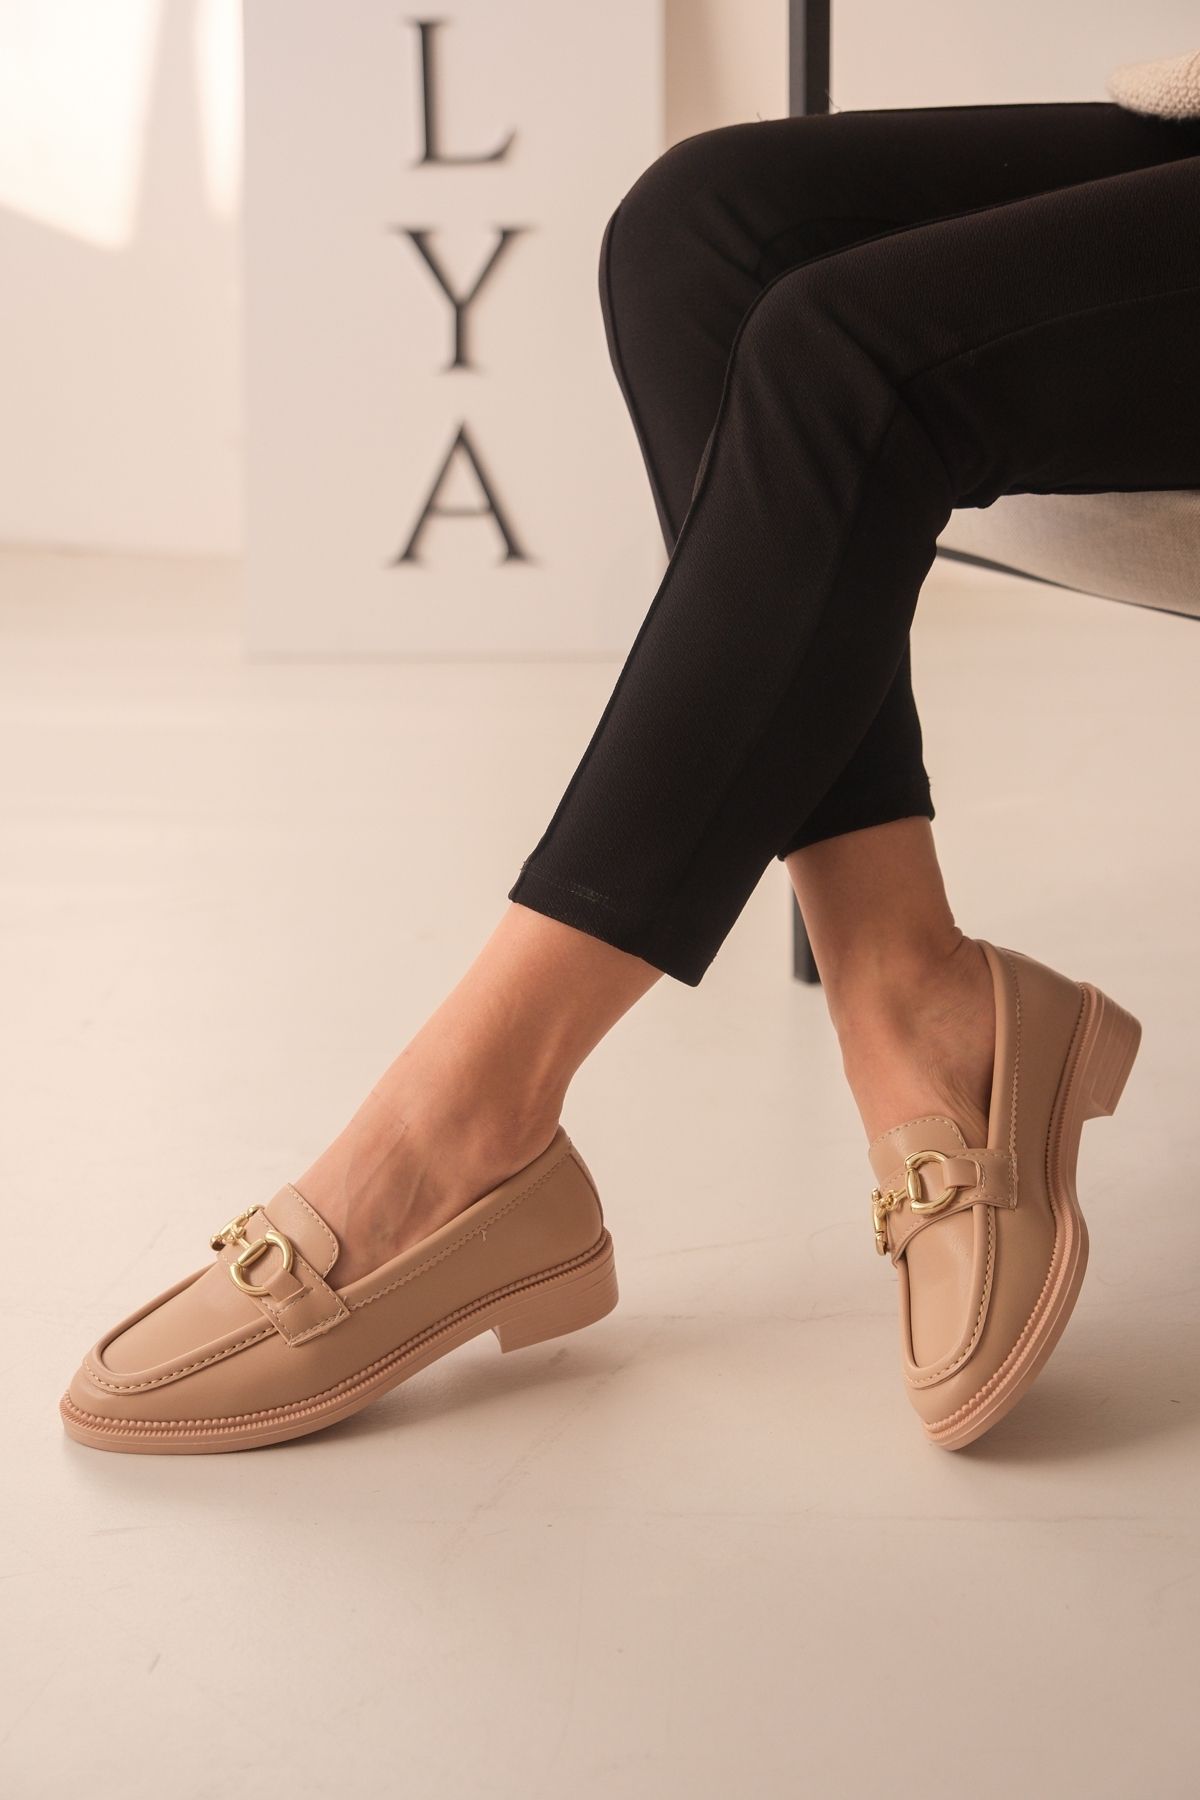 DİVOLYA Riri Nude Gold Tokalı Deri İnce Taban (3cm) Loafer Kadın Ayakkabı